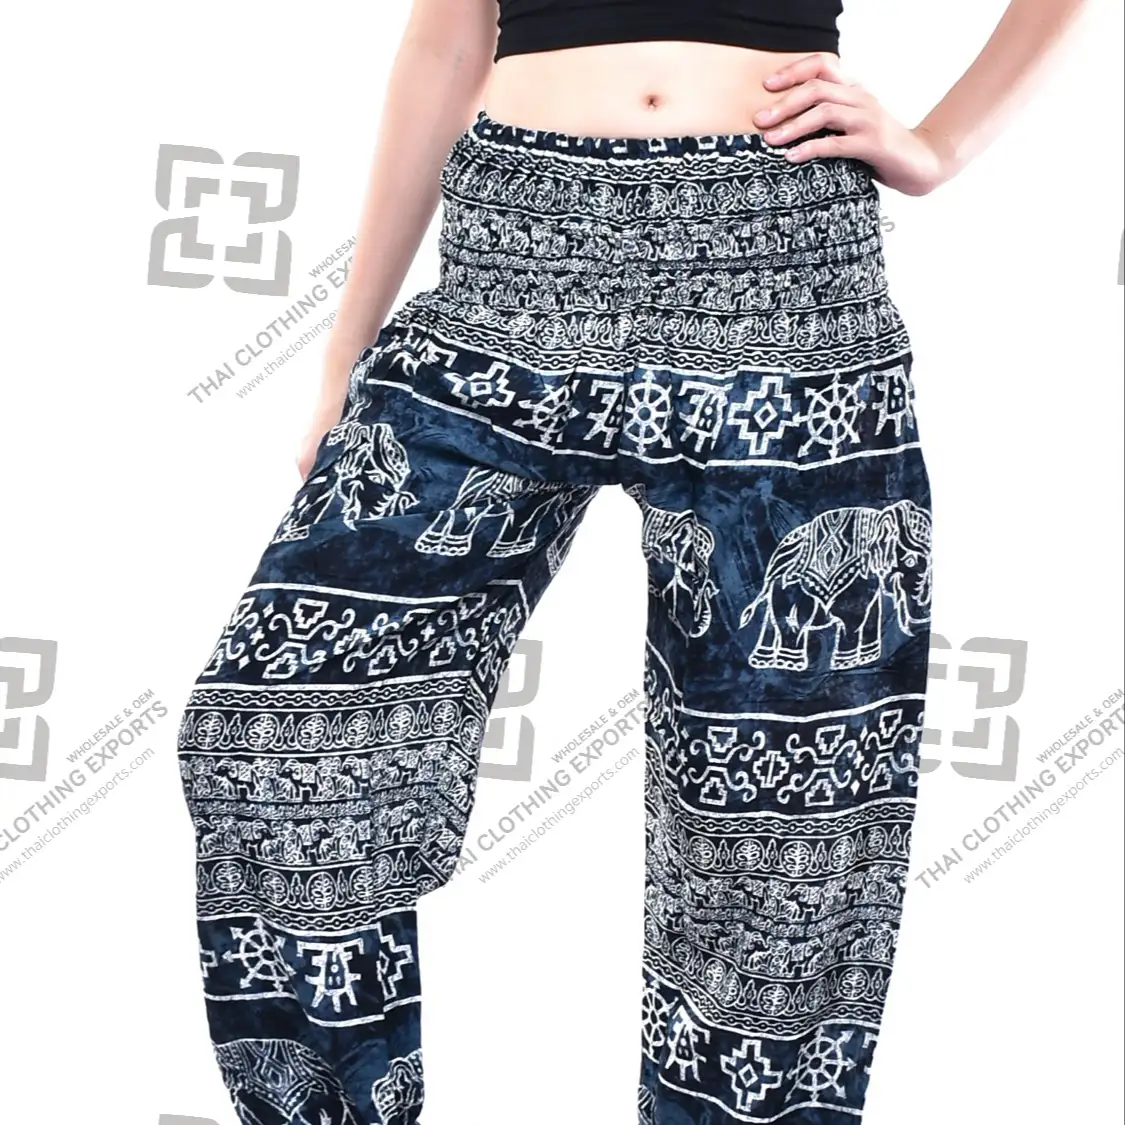 Elephants Harem pants, Rayon pants, Printed Harem pants